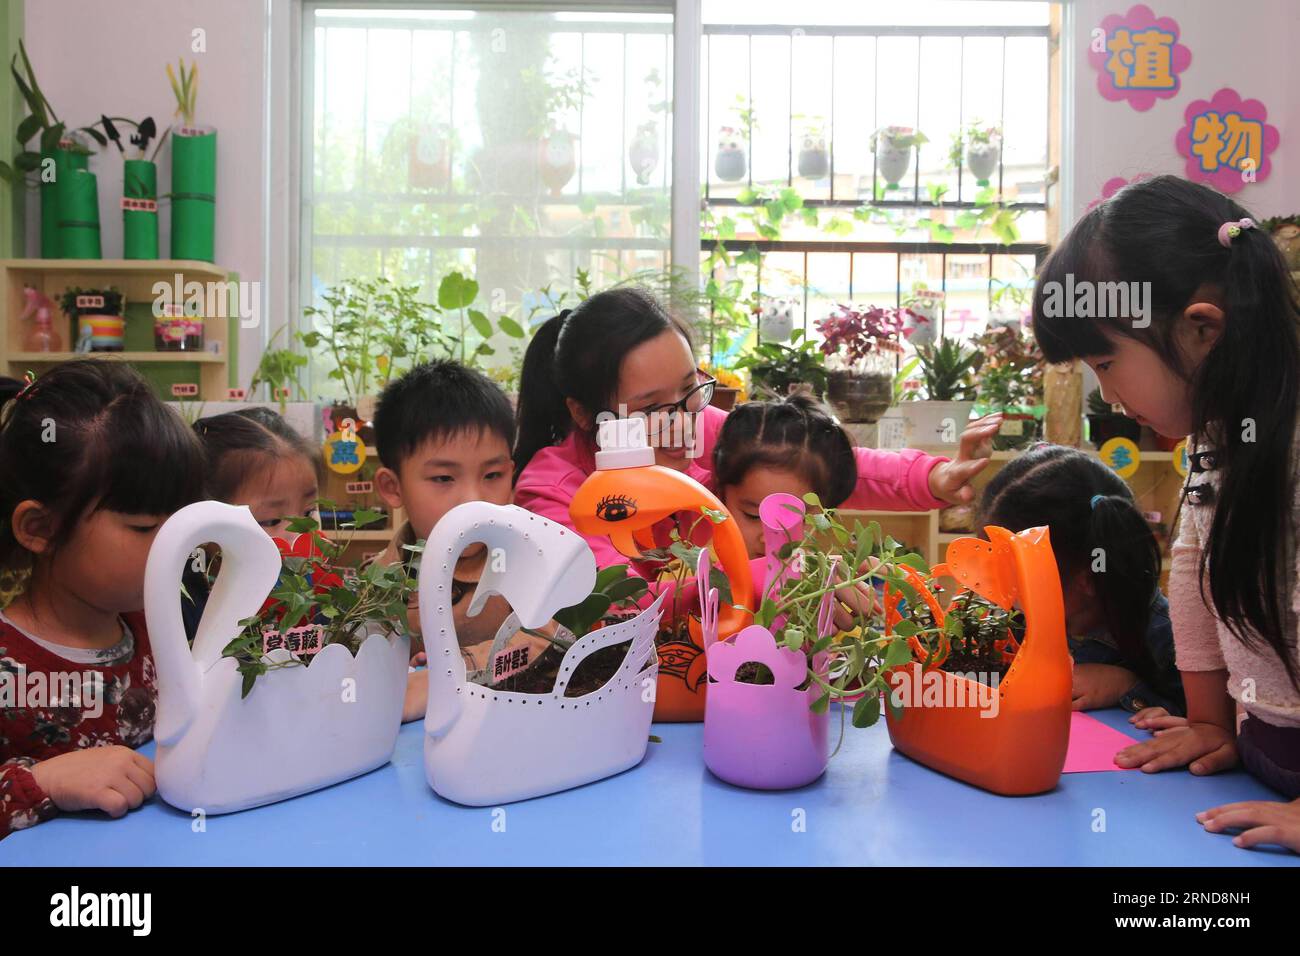 XIANGYANG, le 09 mai 2016 -- des enfants et des enseignants observent et enregistrent la culture de plantes dans une salle de classe de la maternelle expérimentale de Xiangyang à Xiangyang, dans la province du Hubei, au centre de la Chine, le 9 mai 2016. Le jardin d ' enfants de Xiangyang a installé des coins de plantation dans ses salles de classe à partir du trimestre de printemps en 2016, où les enfants peuvent avoir une expérience de plantation et observer la culture des plantes sous la direction de leur enseignant. (Zwx) CHINA-HUBEI-XIANGYANG-KINDERGARTEN-PLANTING CORNER(CN) WangxHu PUBLICATIONxNOTxINxCHN Xiang Yang Mai 09 2016 enfants et enseignants observer et enregistrer la croissance de Plan Banque D'Images